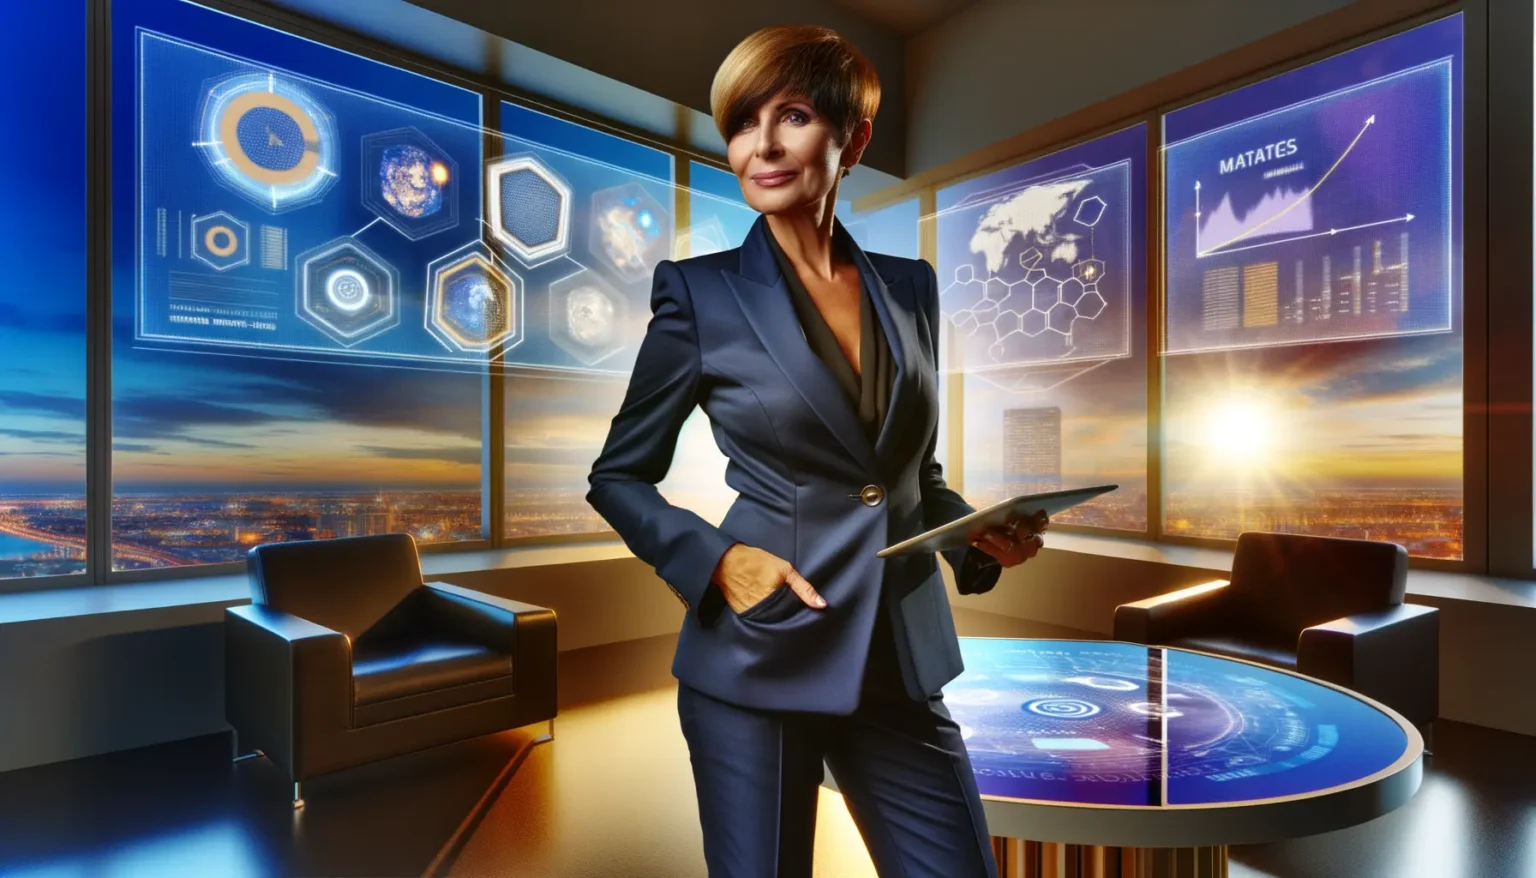 Eine Person in einem eleganten blauen Anzug steht in einem modernen Büro mit futuristischen Touchscreens und Grafiken auf transparenten Displays. Die Person hält ein Tablet und sieht selbstbewusst in die Kamera. Im Hintergrund ist durch große Fenster ein Sonnenuntergang über einer Stadtlandschaft zu sehen.